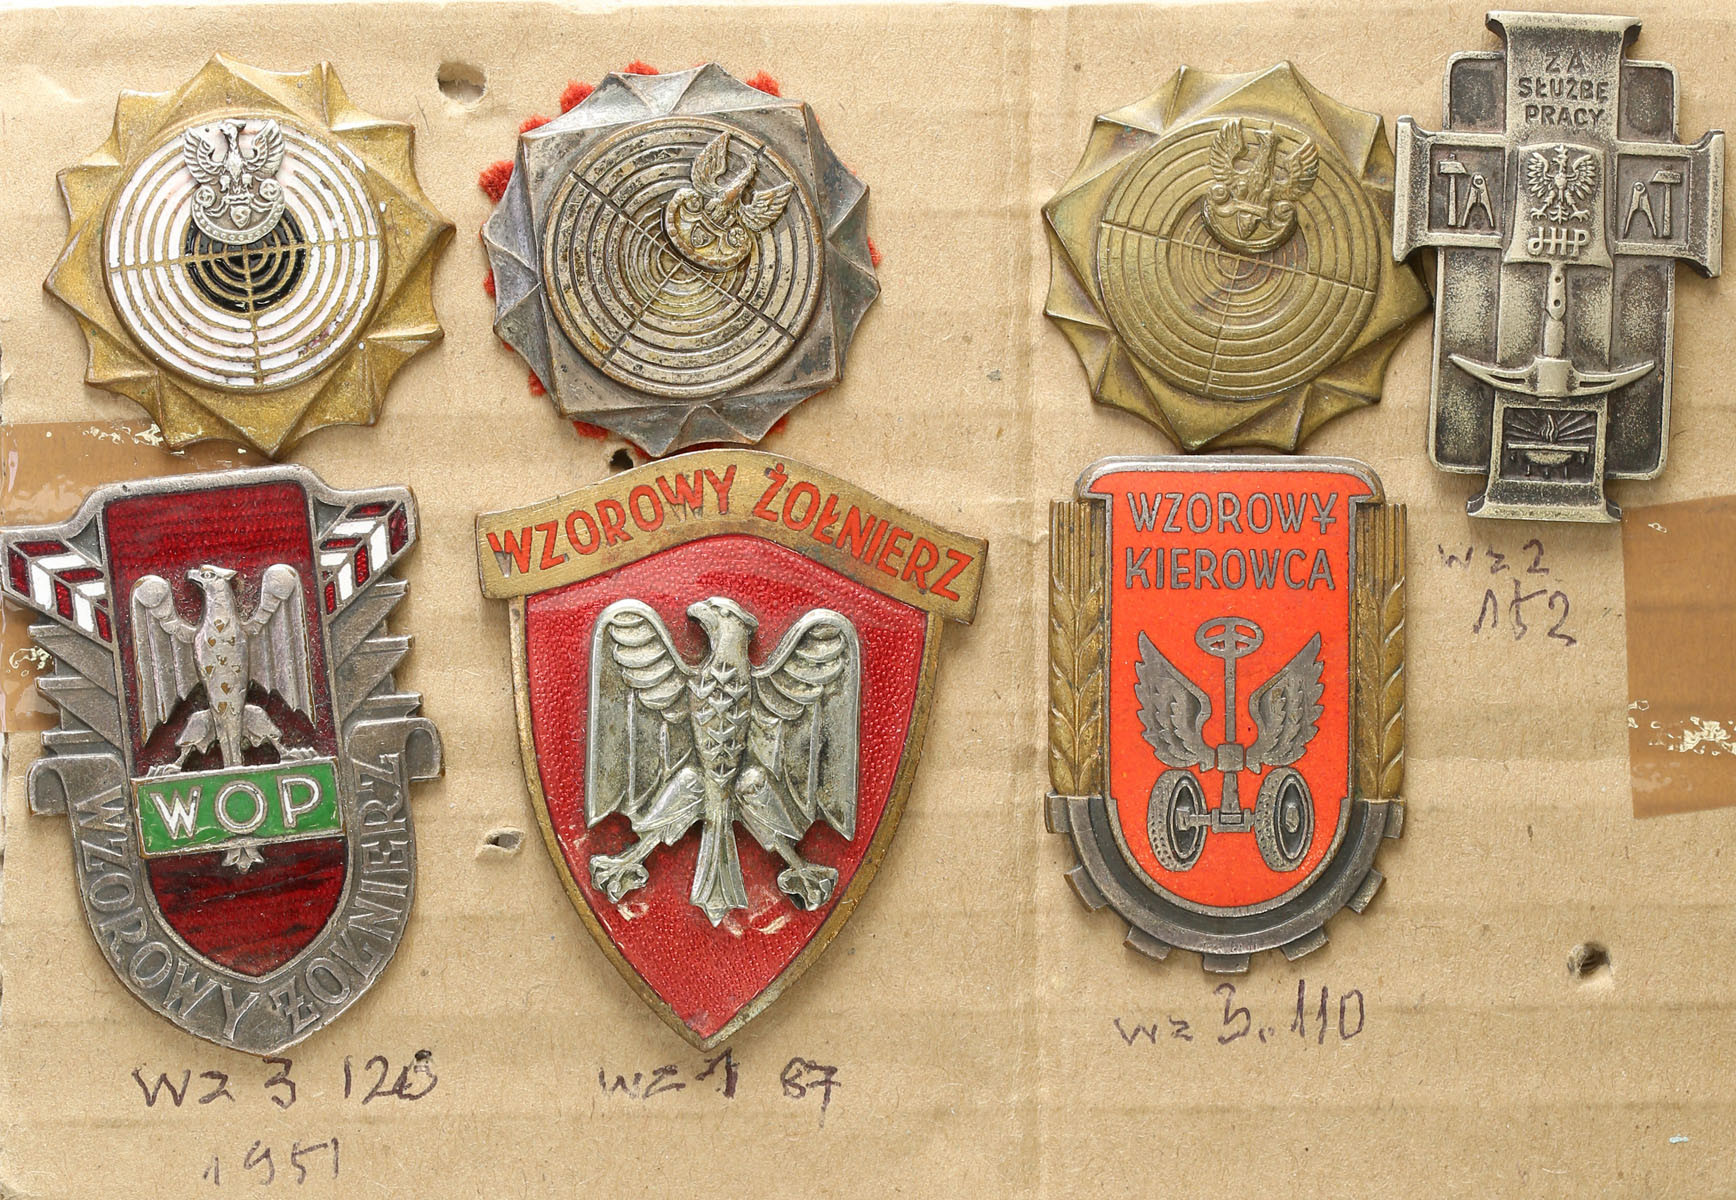 Odznaki Wzorowy Kierowca, Wzorowy Żołnierz, Odznaki strzeleckie, za służbę zestaw 7 sztuk